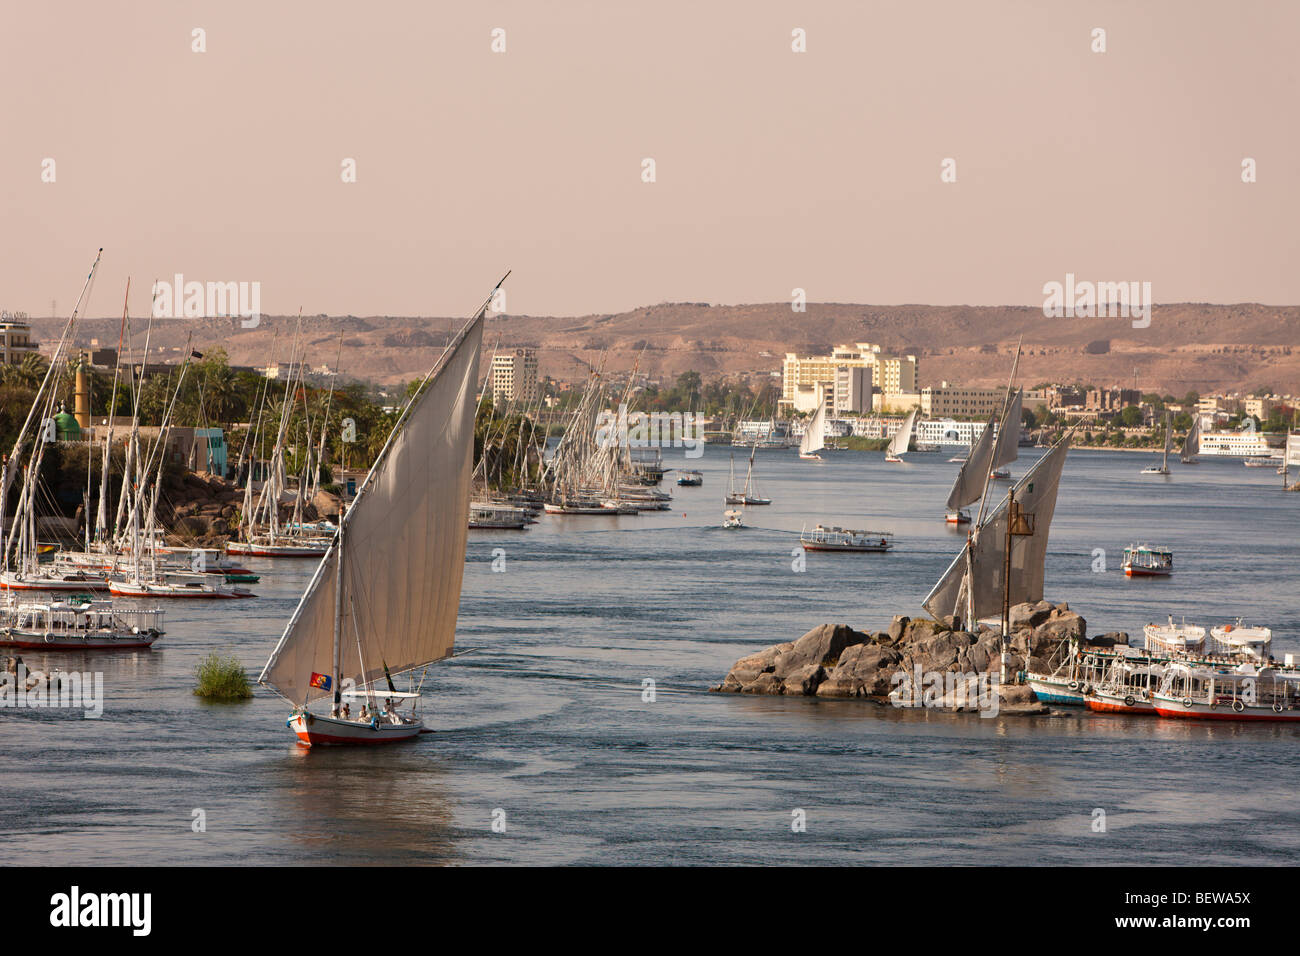 Felouque sur le Nil, Assouan, Egypte Banque D'Images